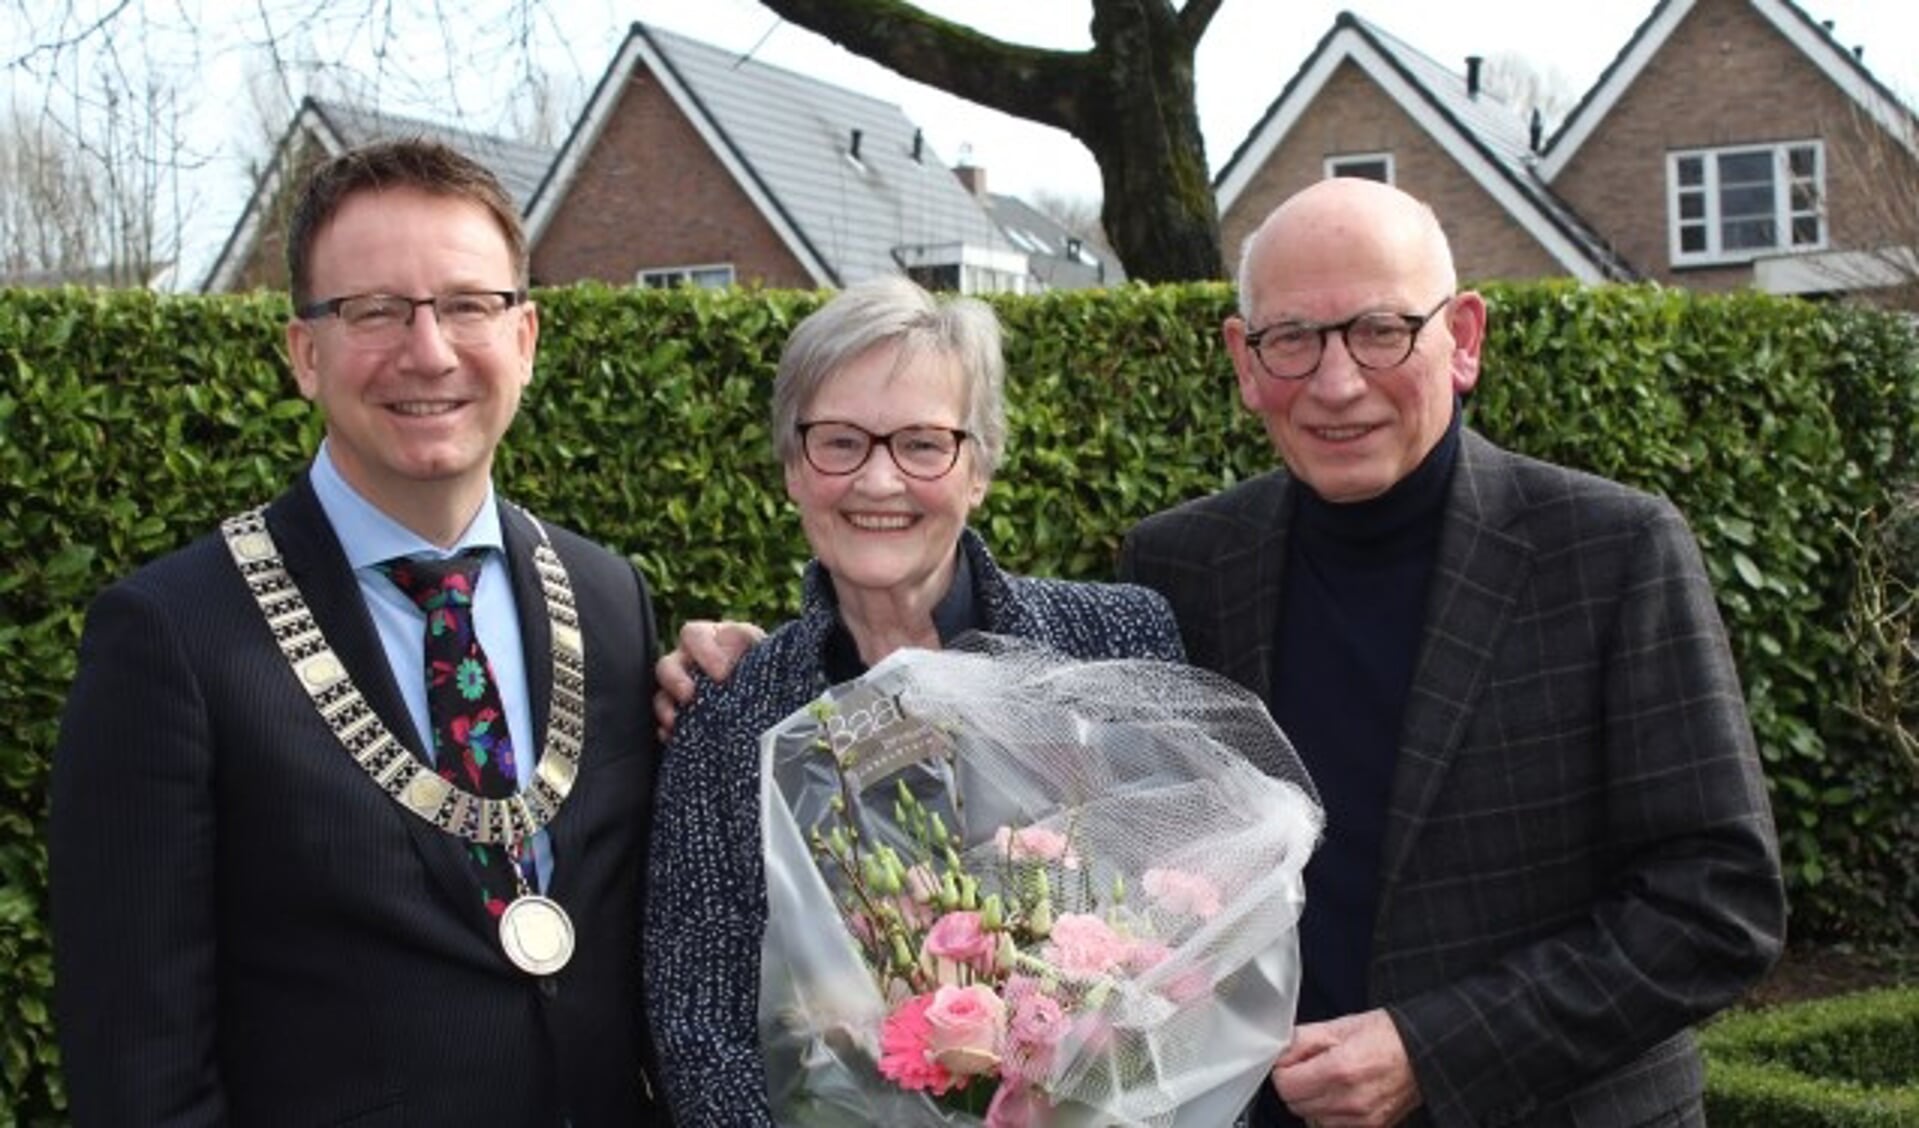 Burgemeester Van Domburg zette het gouden paar Van Dijk op een stralende dag in de bloemen. (Foto: Lysette Verwegen)